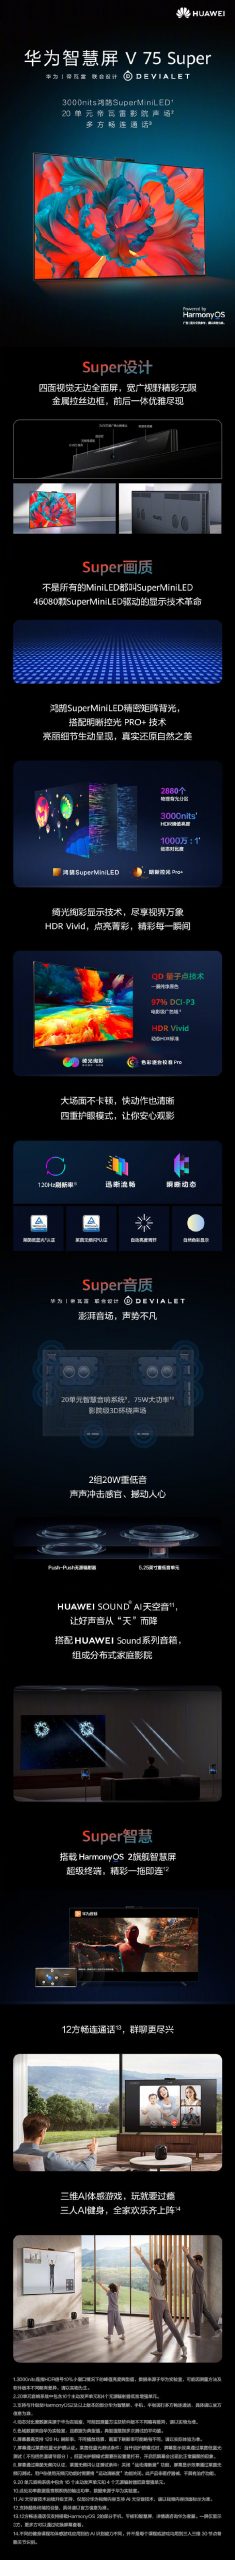 Huawei Smart Screen V75